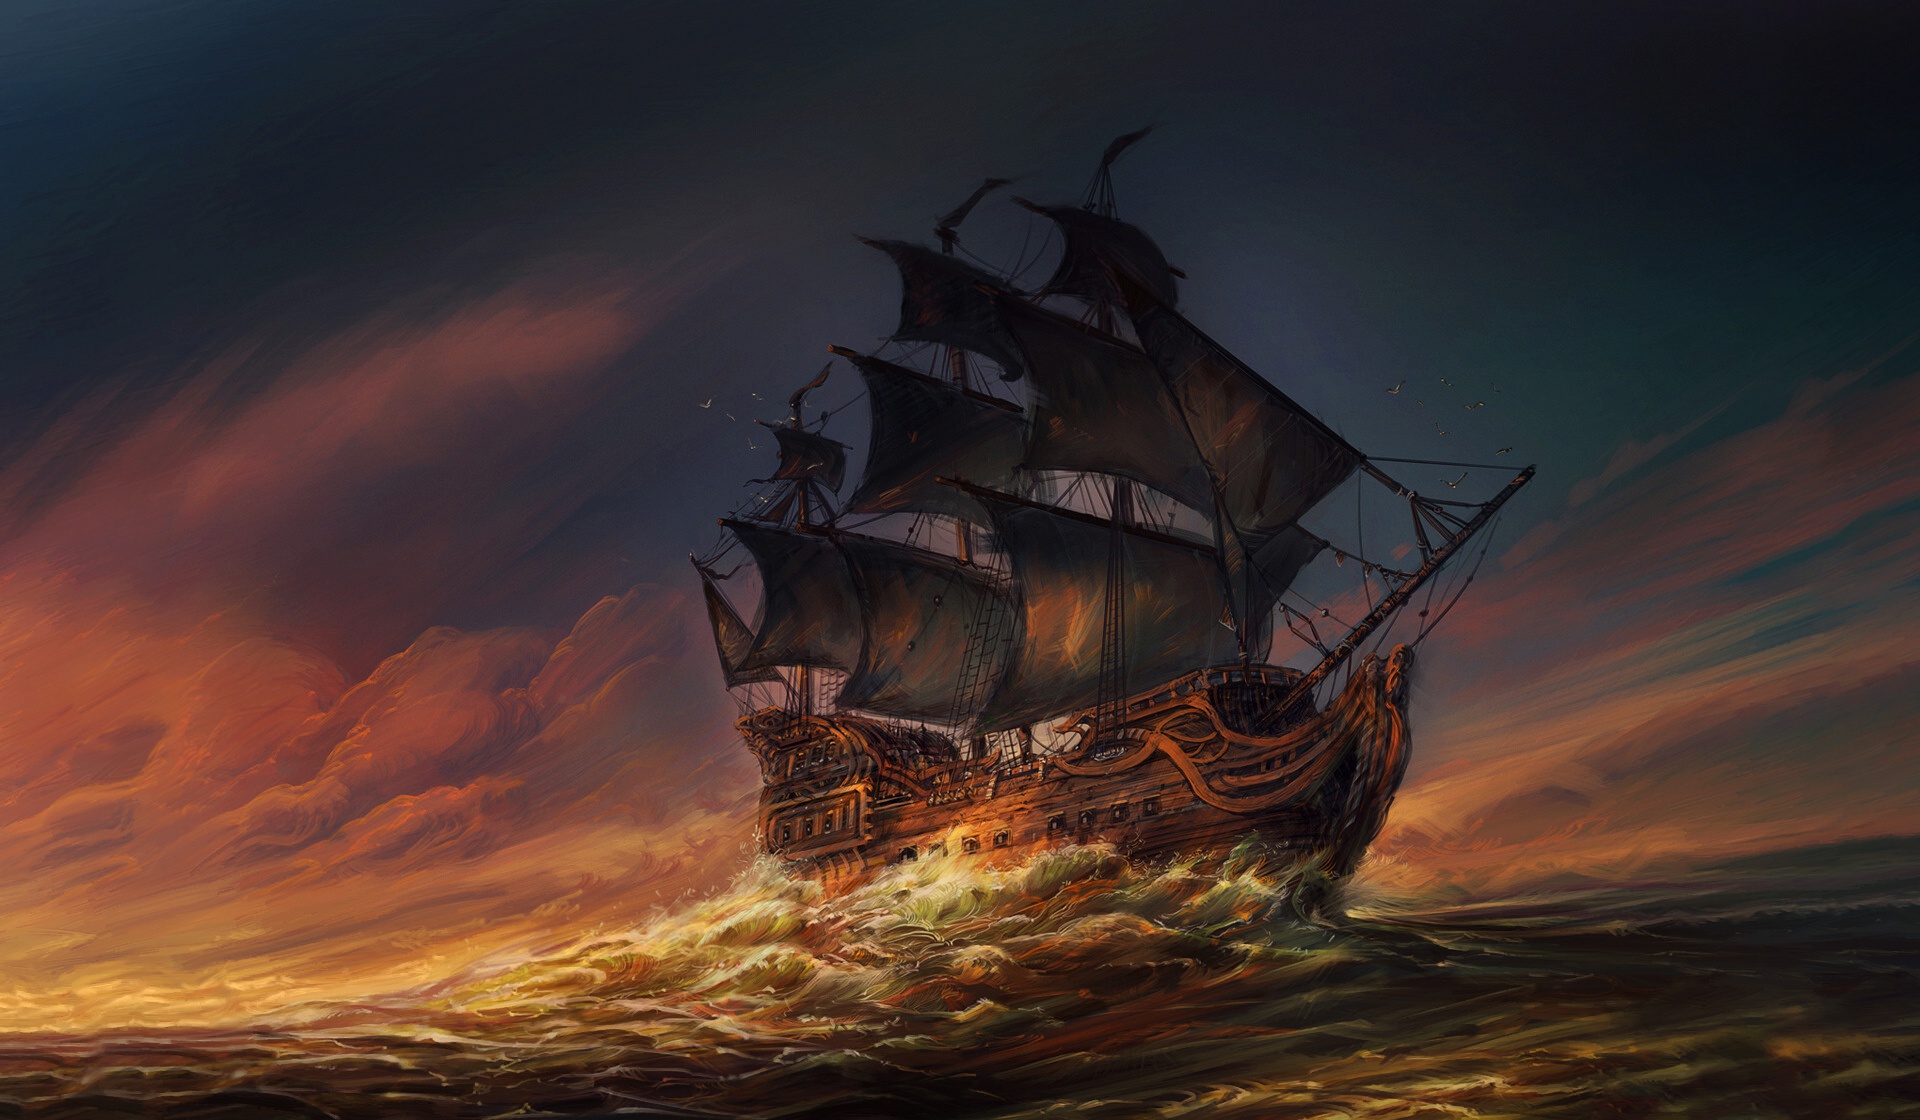 Ship on the High Seas by Jorge Jacinto